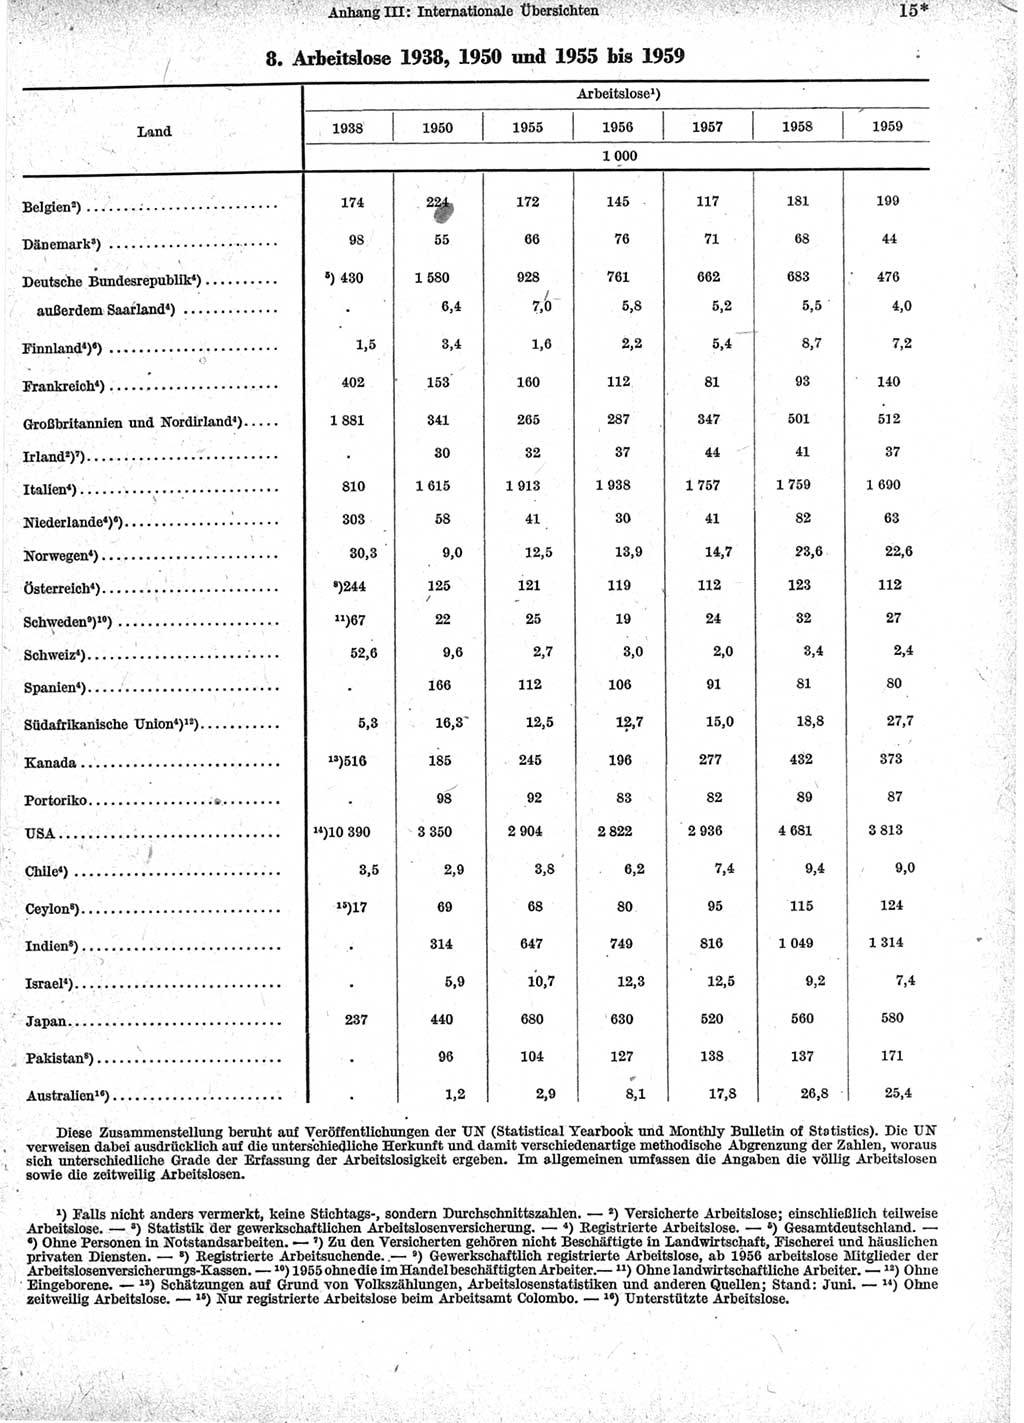 Statistisches Jahrbuch der Deutschen Demokratischen Republik (DDR) 1960-1961, Seite 15 (Stat. Jb. DDR 1960-1961, S. 15)